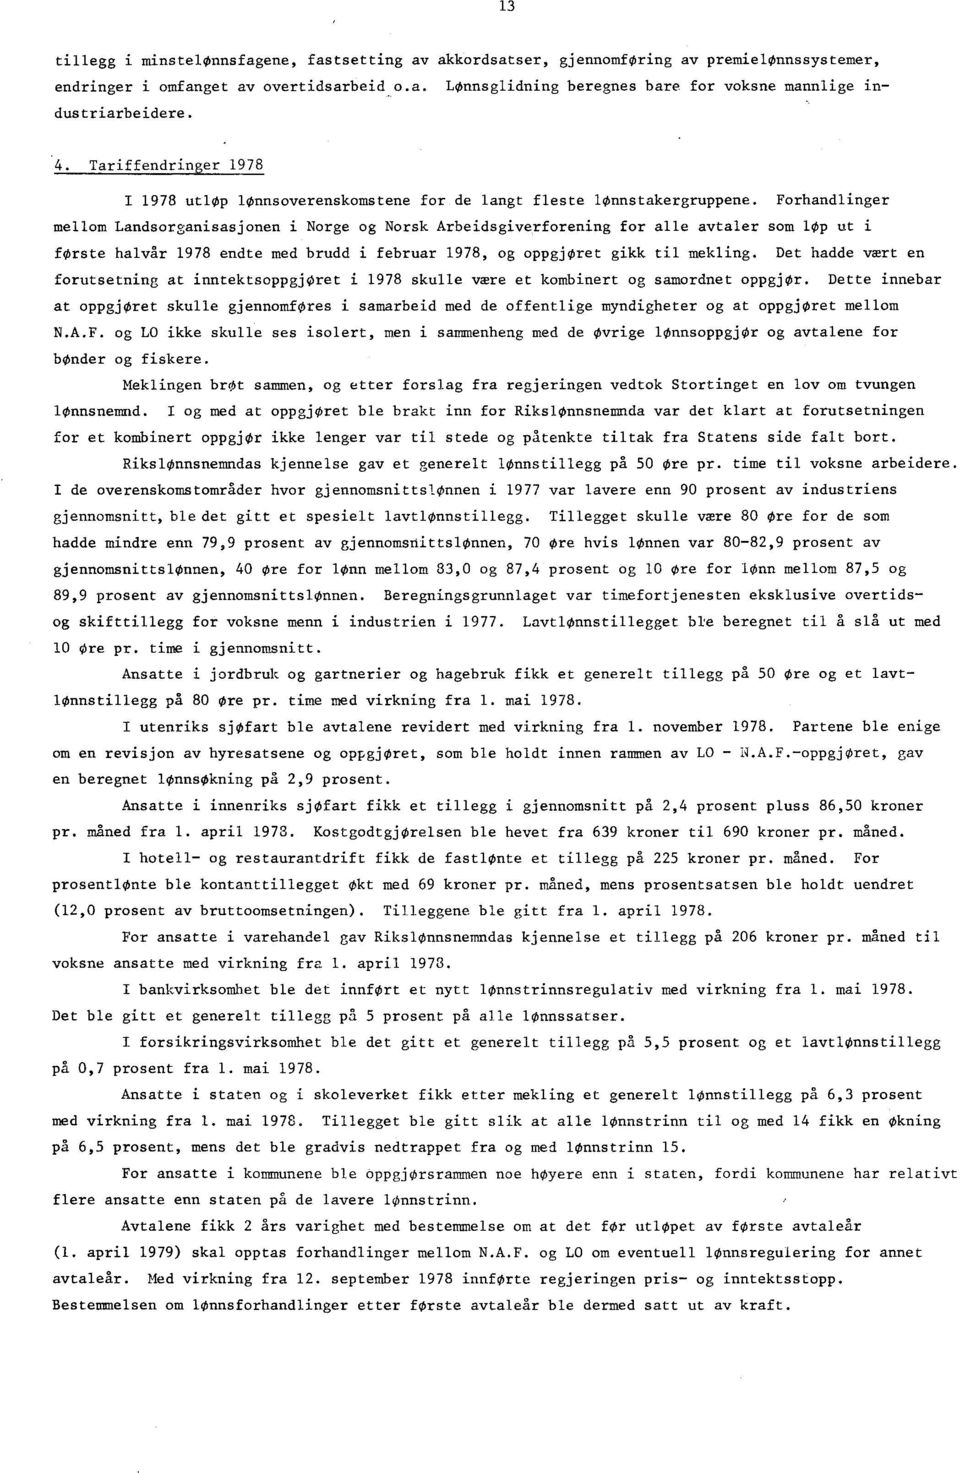 Forhandlinger mellom Landsorganisasjonen i Norge og Norsk Arbeidsgiverforening for alle avtaler som løp ut i første halvår 1978 endte med brudd i februar 1978, og oppgjøret gikk til mekling.